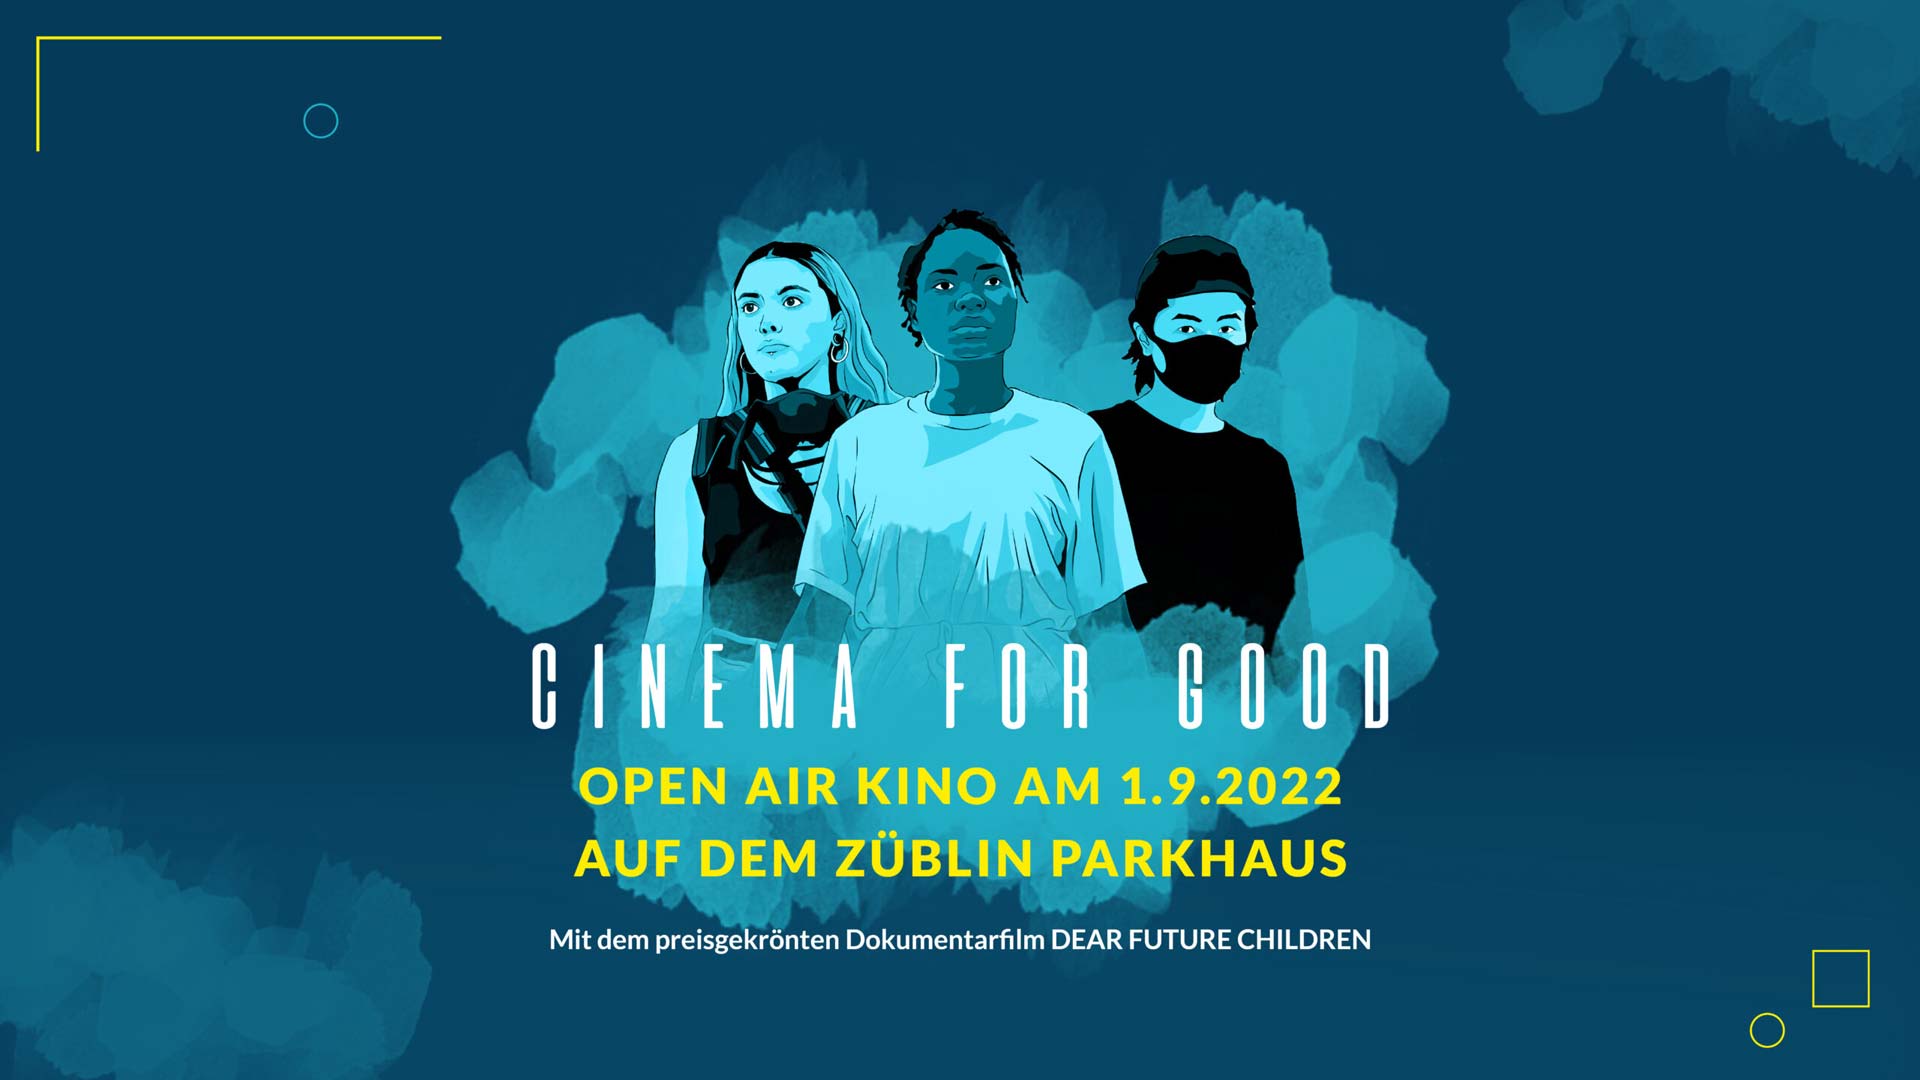 Eine Grafik auf der "Cinema for Good" steht.